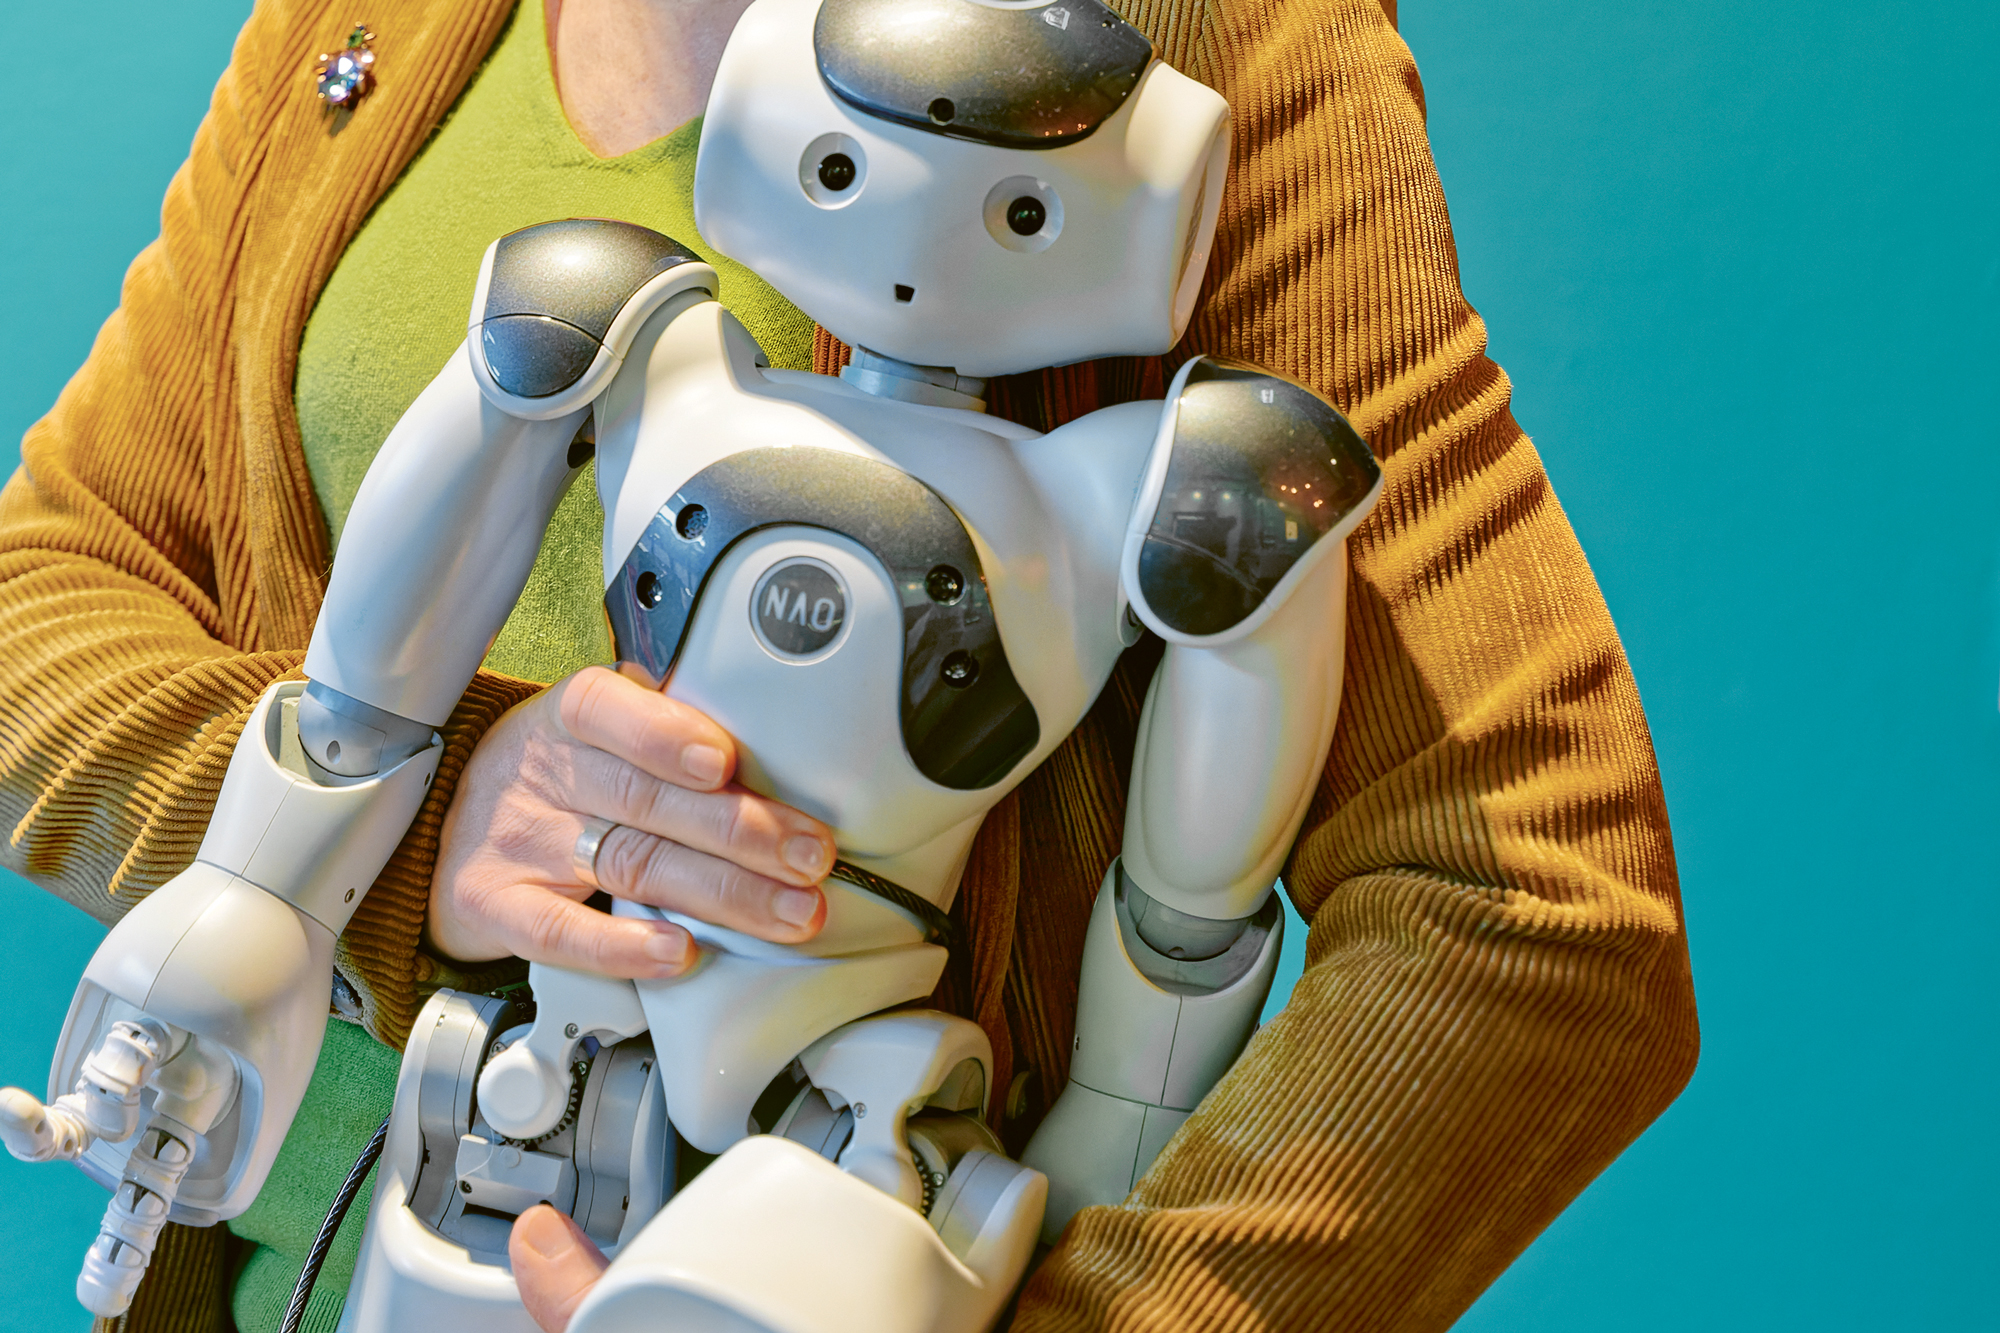 Hello Nao: The humanoid robot on Frauke Untiedt